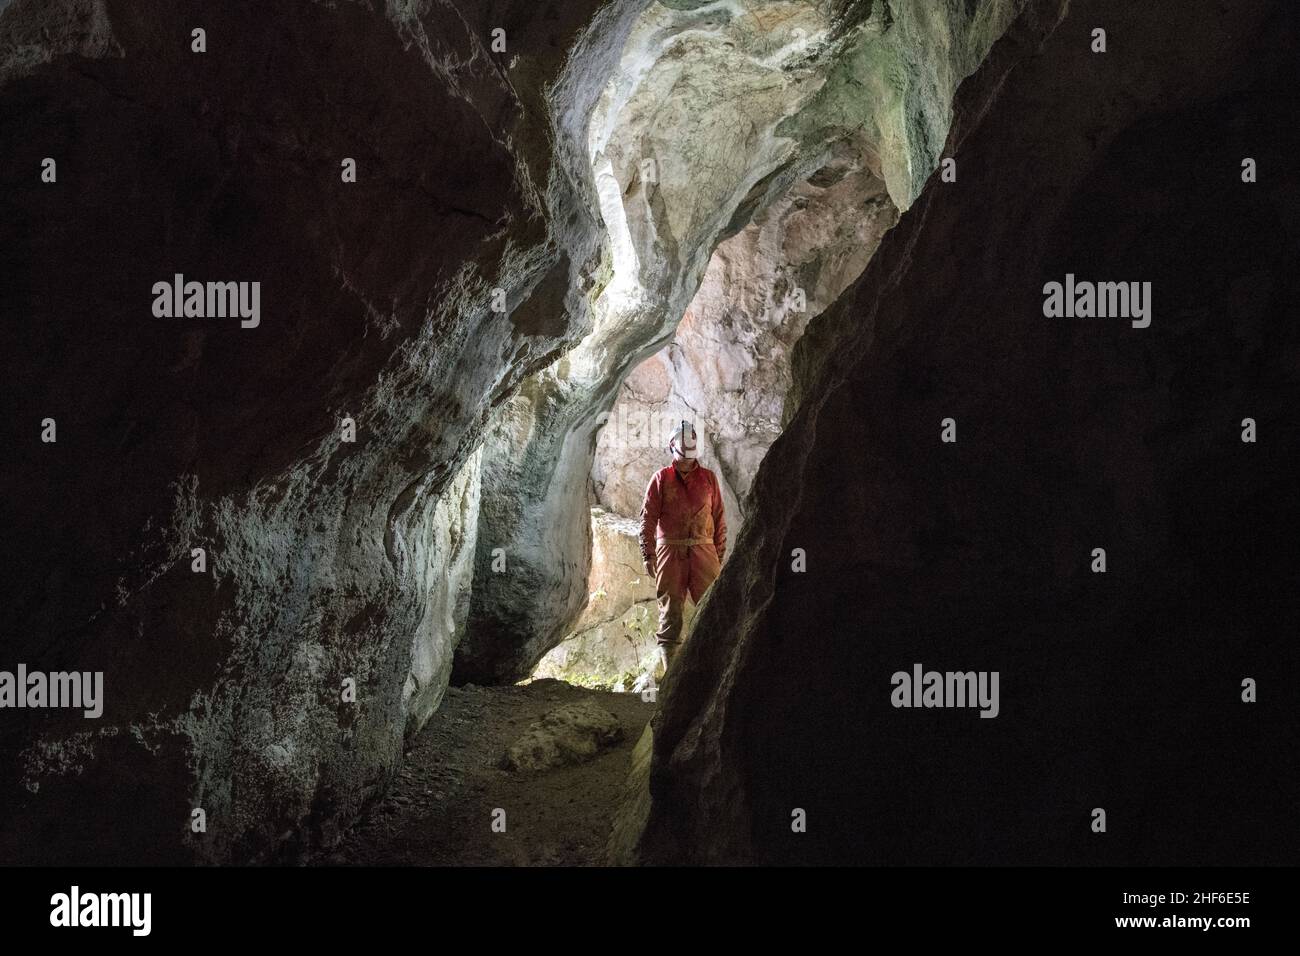 Grotte de stalactite en France, Grotte du Memont Banque D'Images